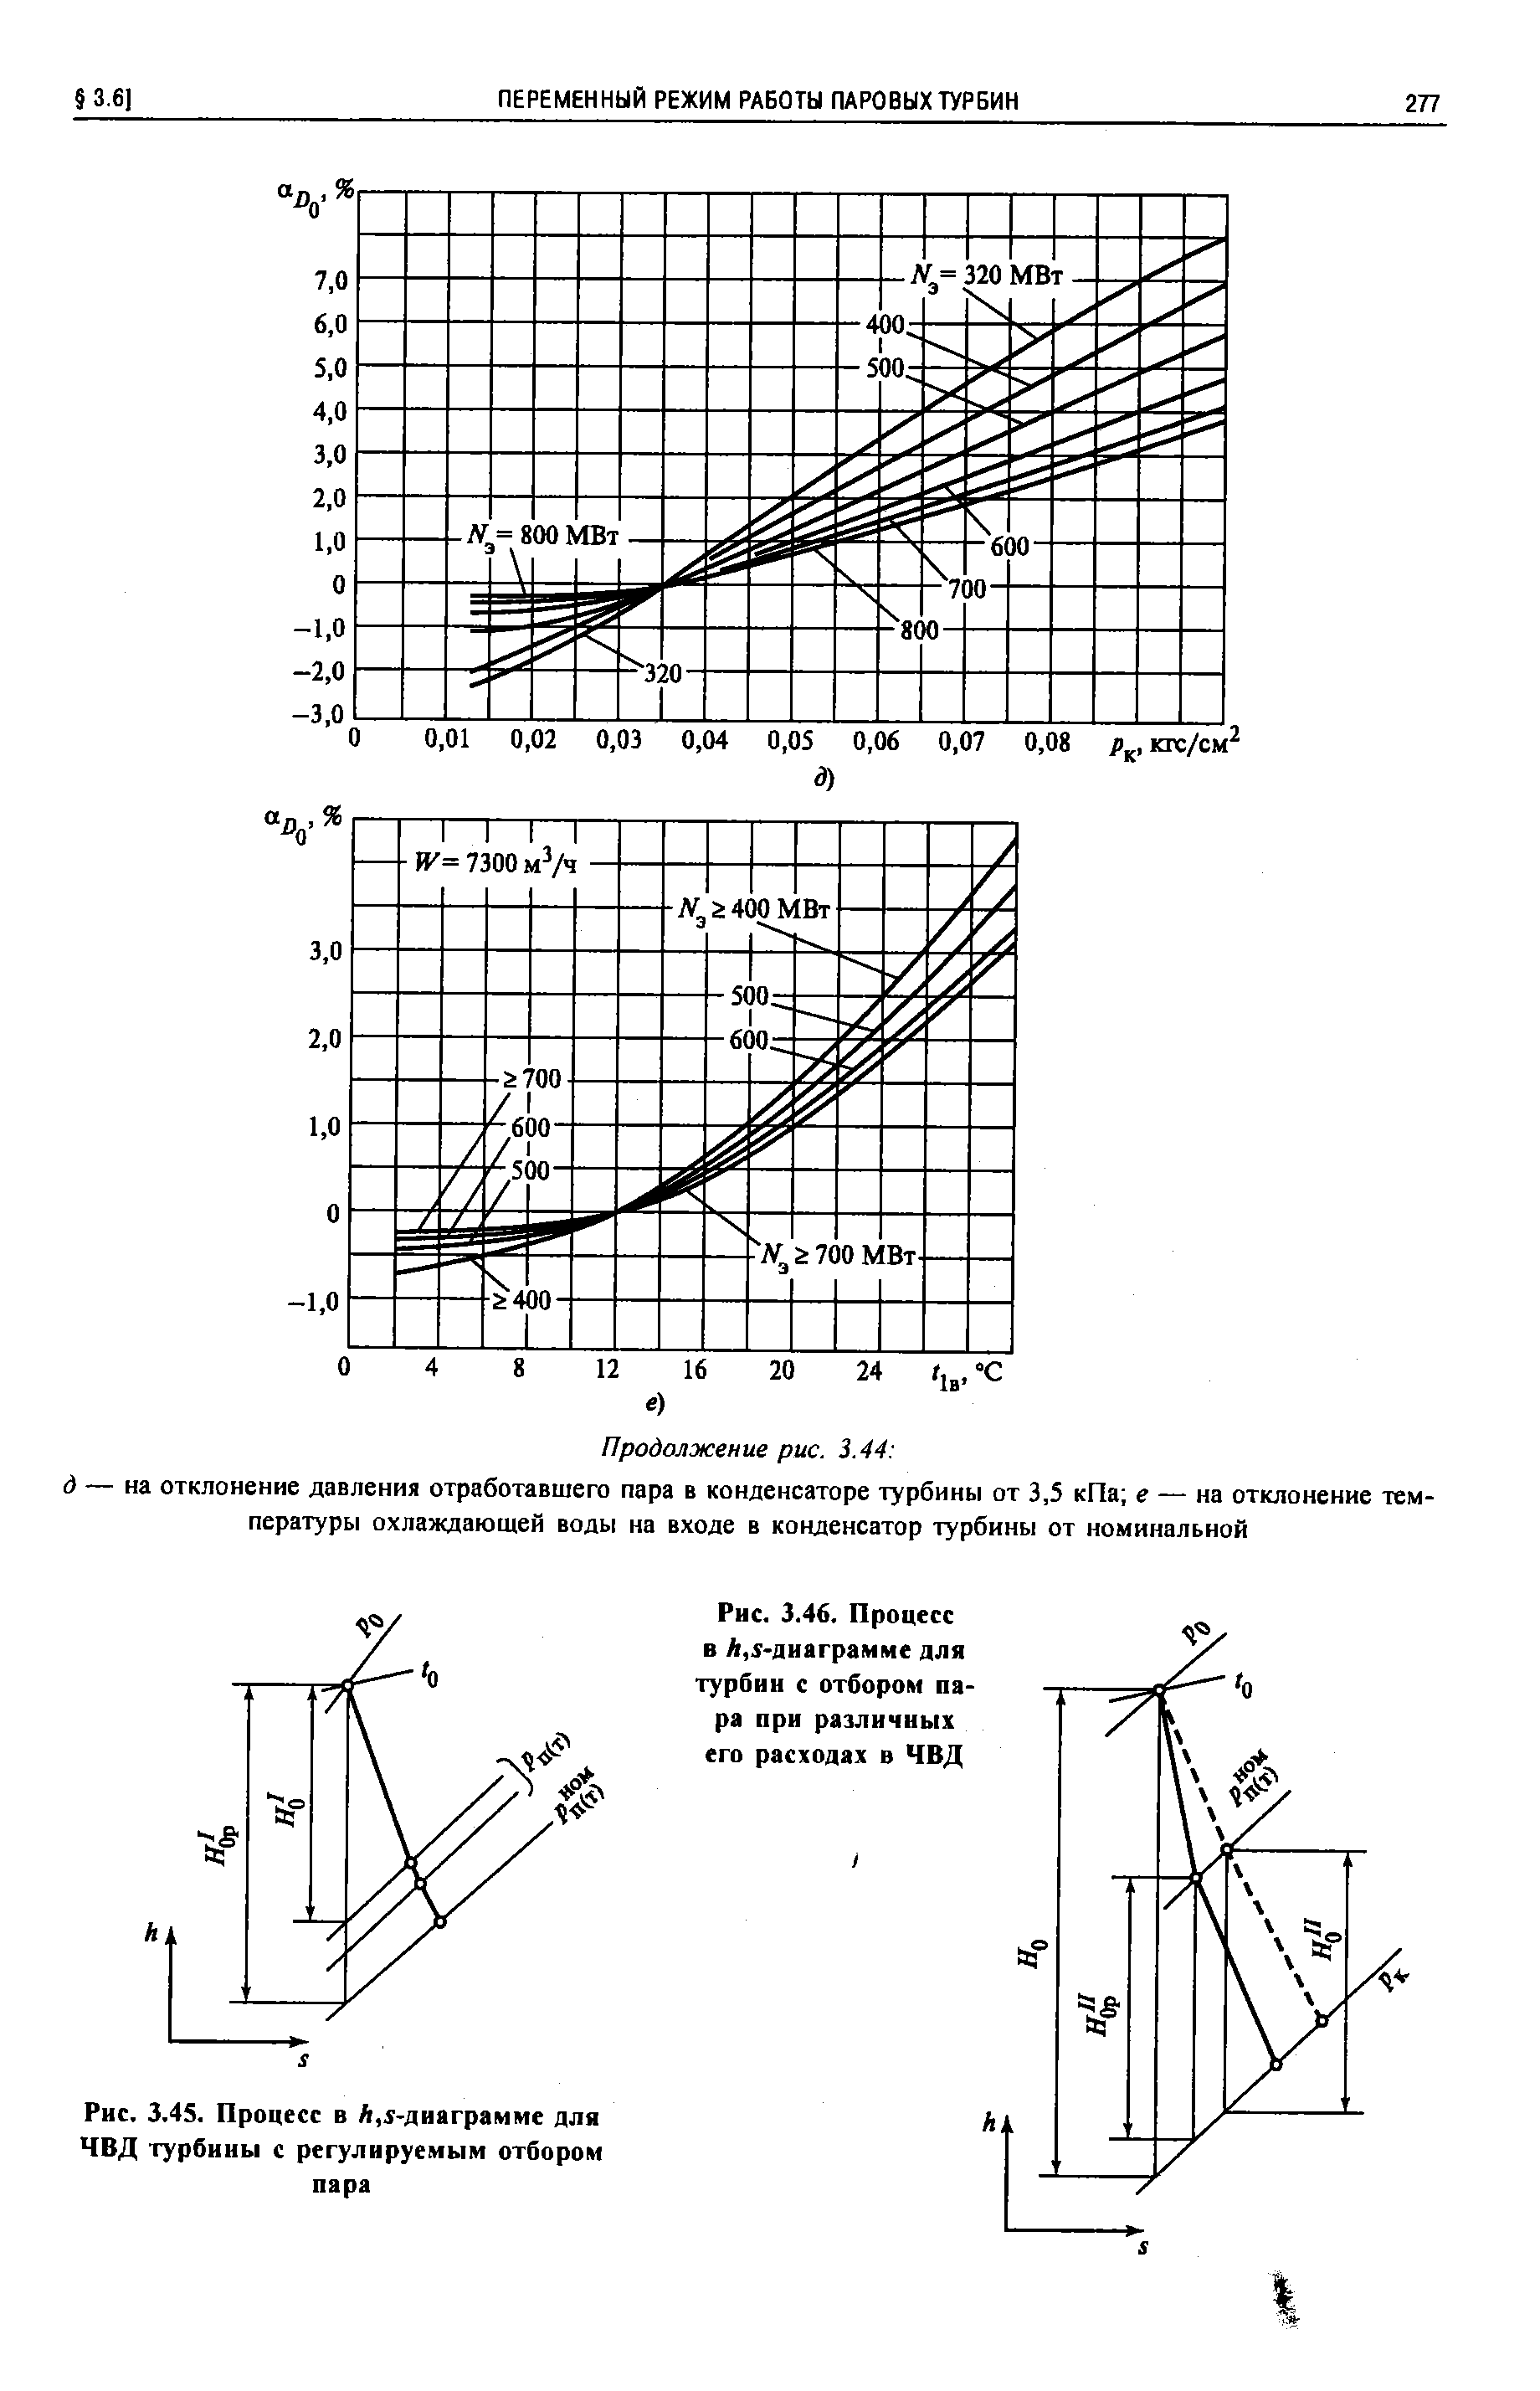 Рис. 3.46. Процесс в /г,1-диаграмме для Турбин с отбором пара при различных его расходах в ЧВД
